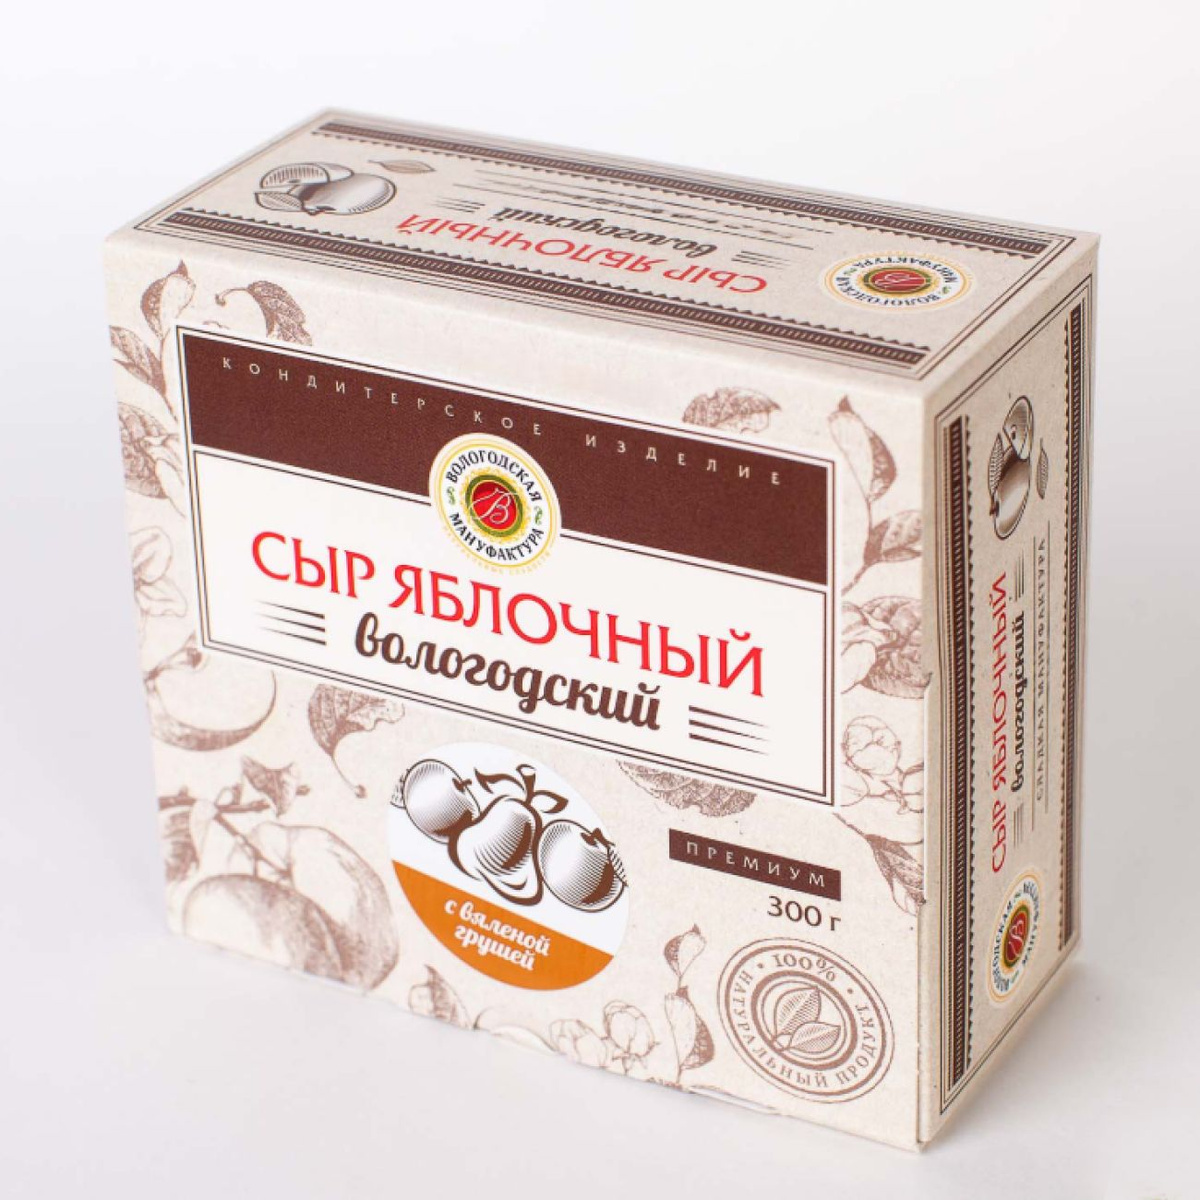 Вологодский яблочный сыр "Вологодская мануфактура" Без Сахара, с вяленой грушей, 300 гр.